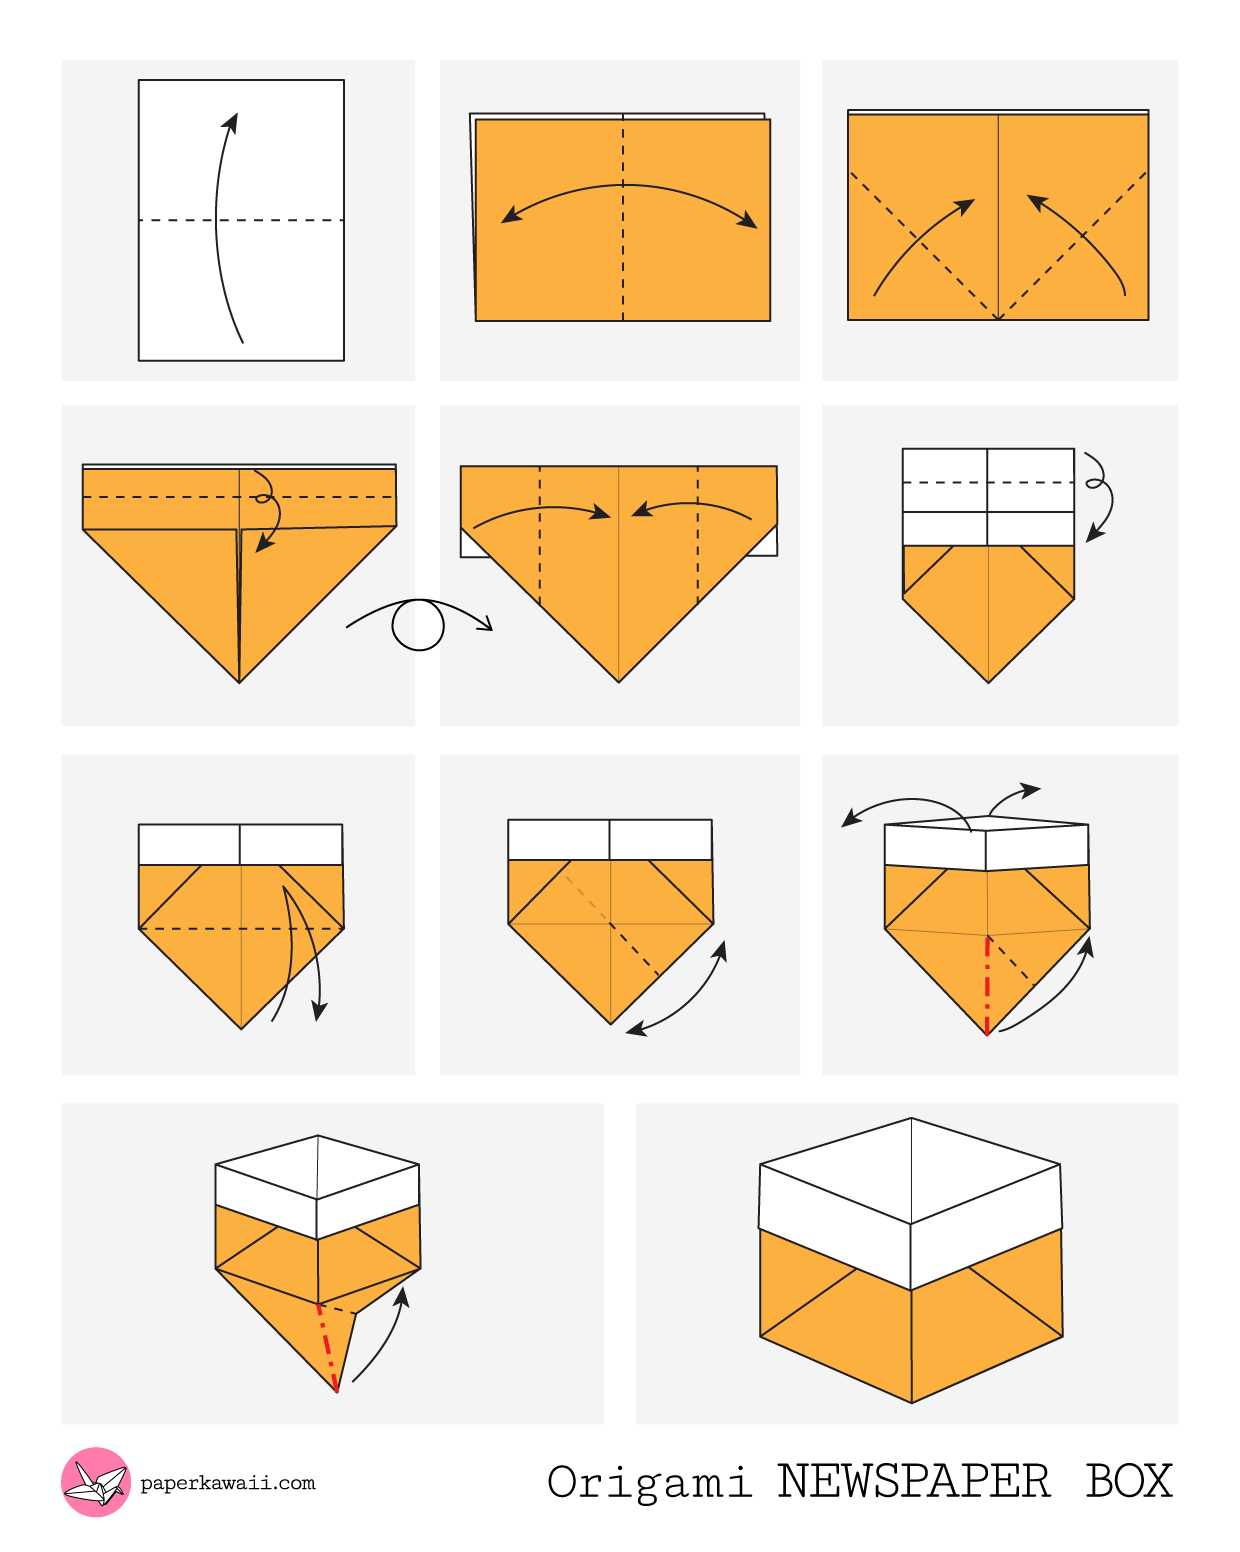 Origami Box Instructions Origami Box Instructions Image Collections Form 1040 Instructions